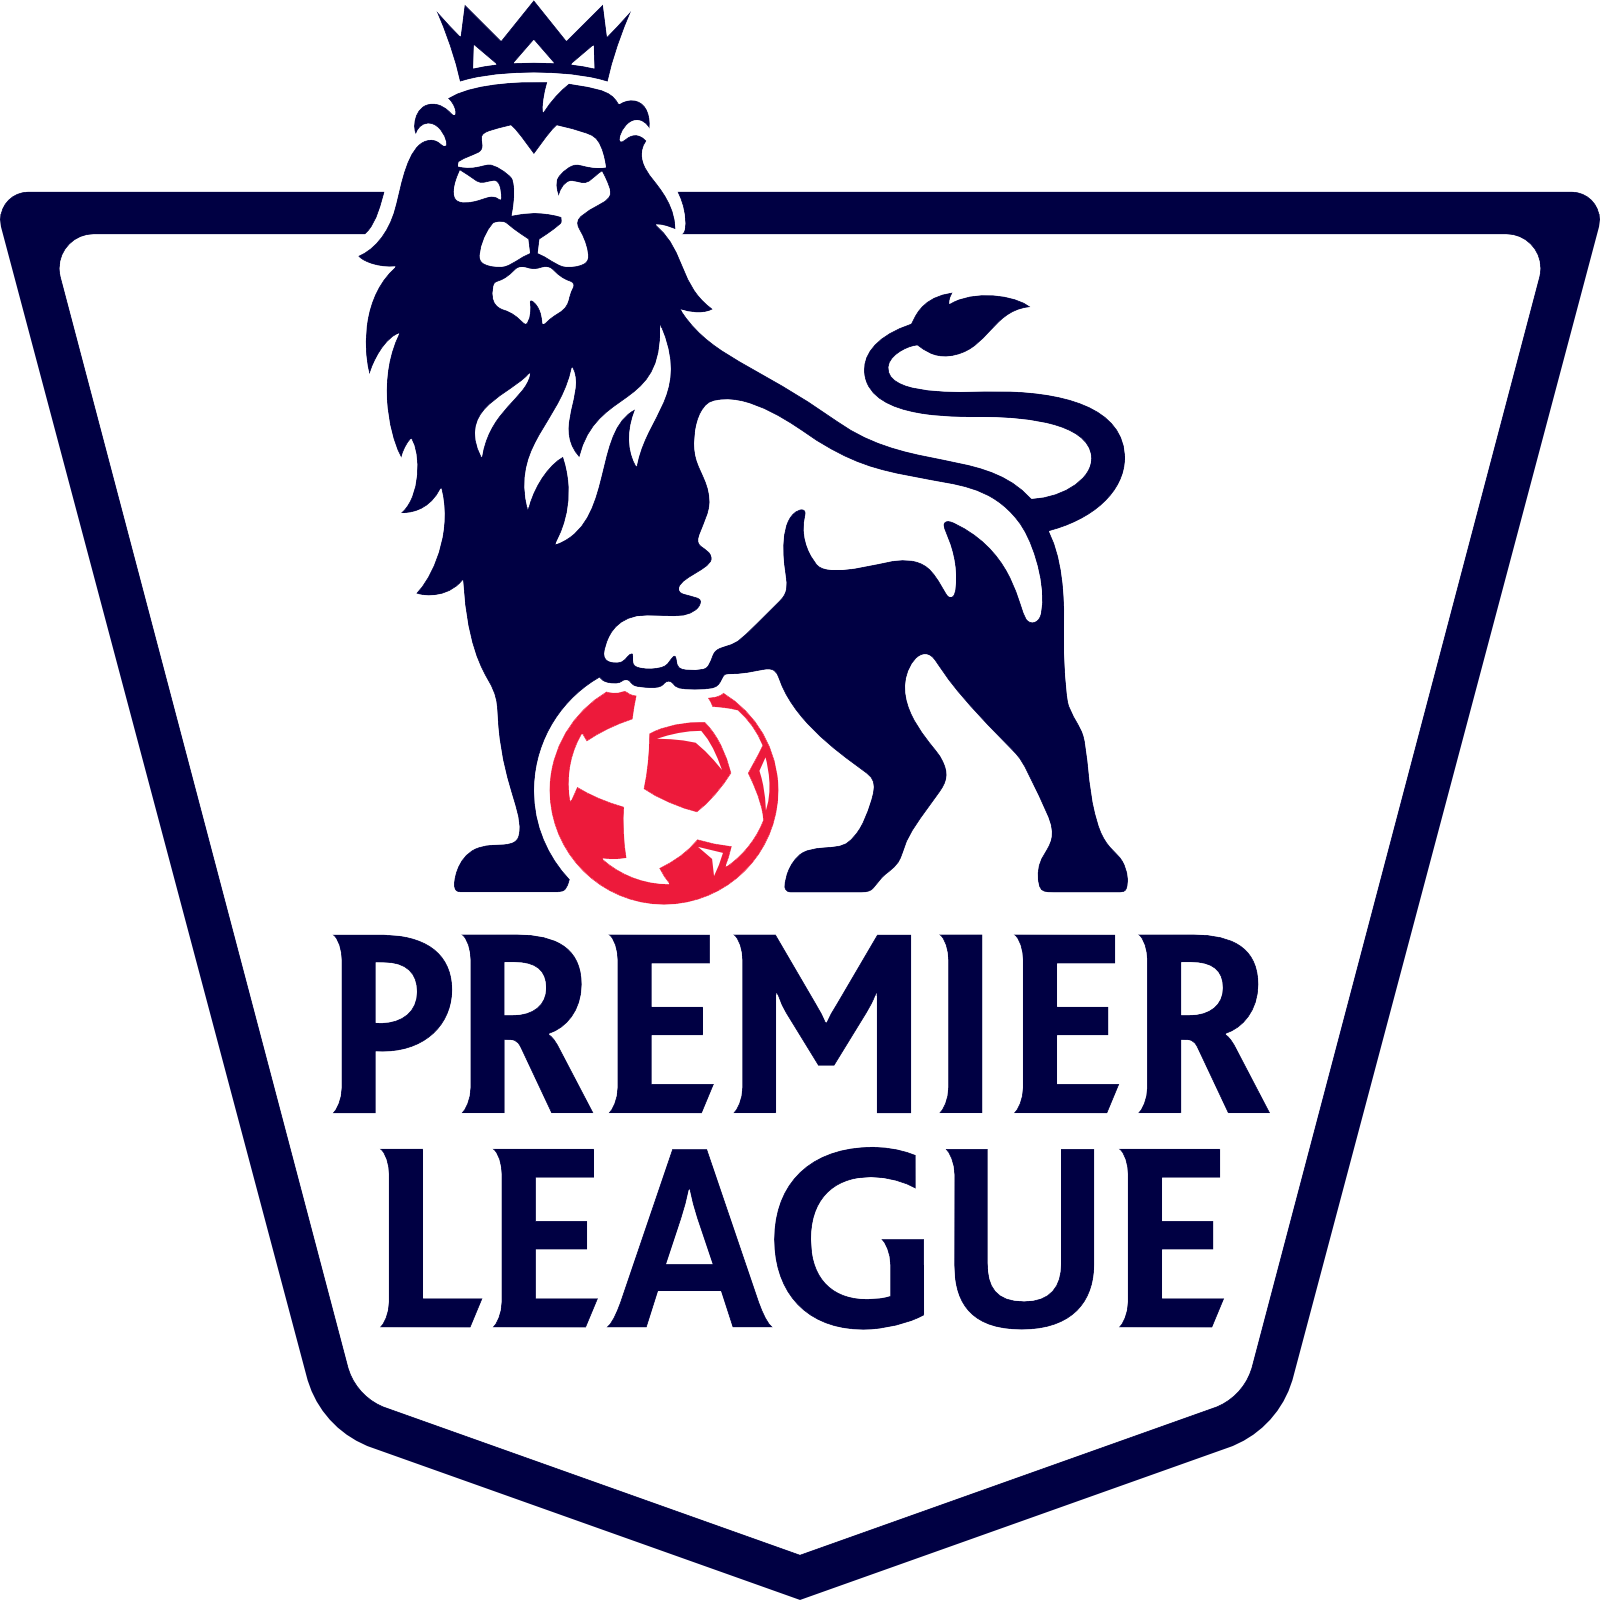 Premier League Background PNG Image